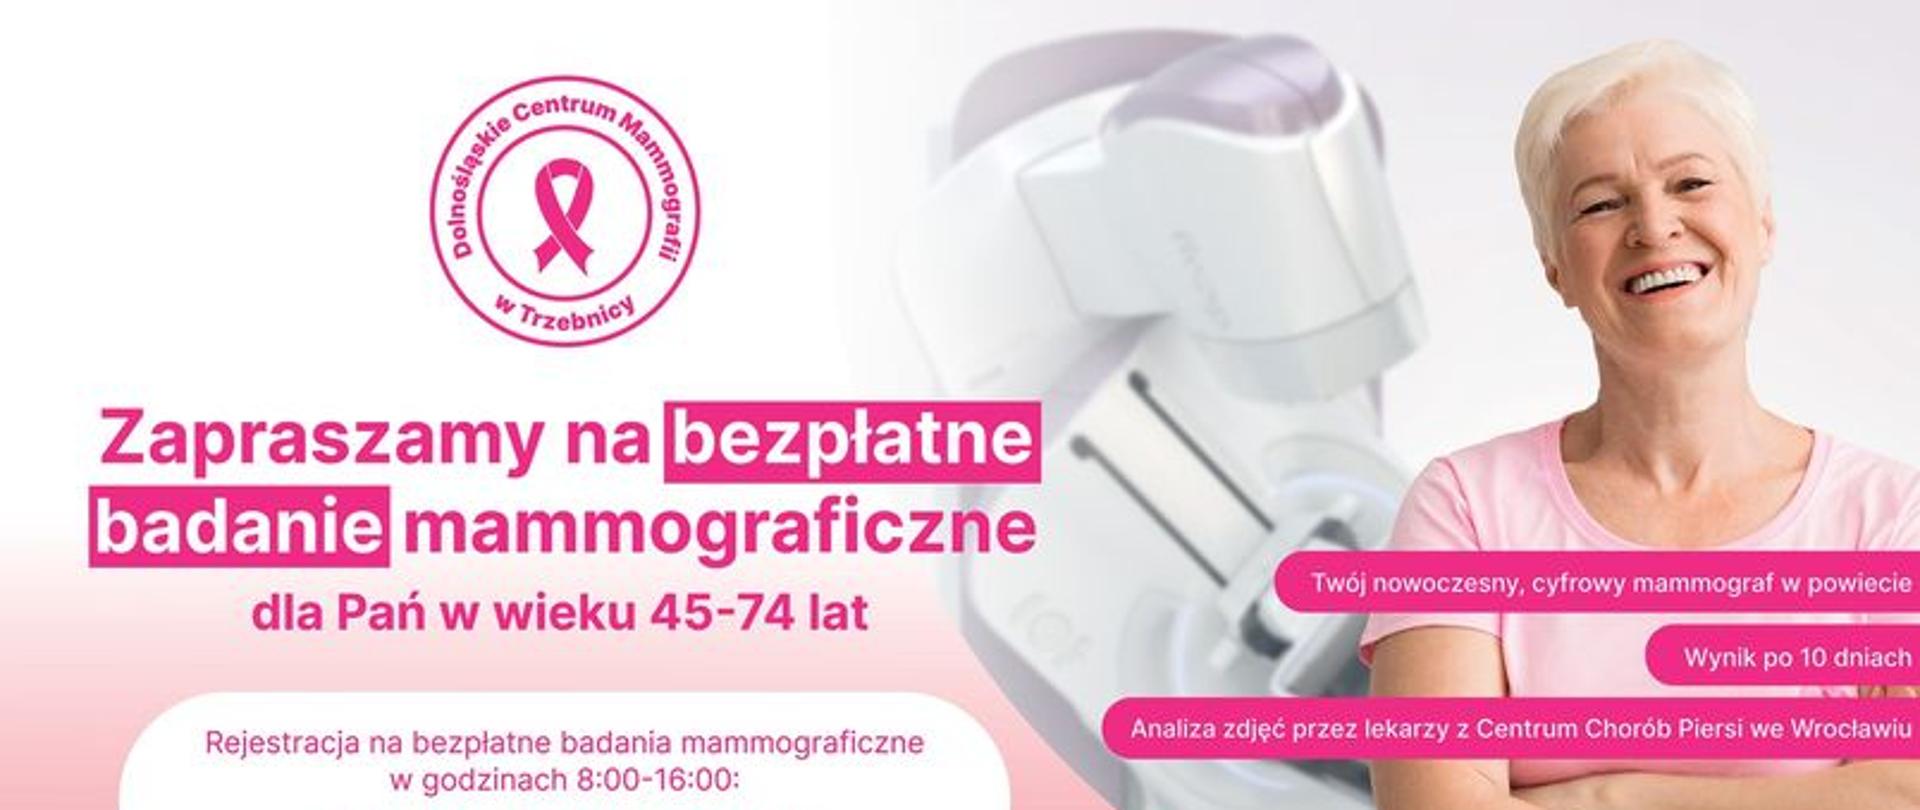 Zaproszenie na bezpłatne badanie mammograficzne dla Pań w wieku 45-74 lat
telefon 71 36 89 320